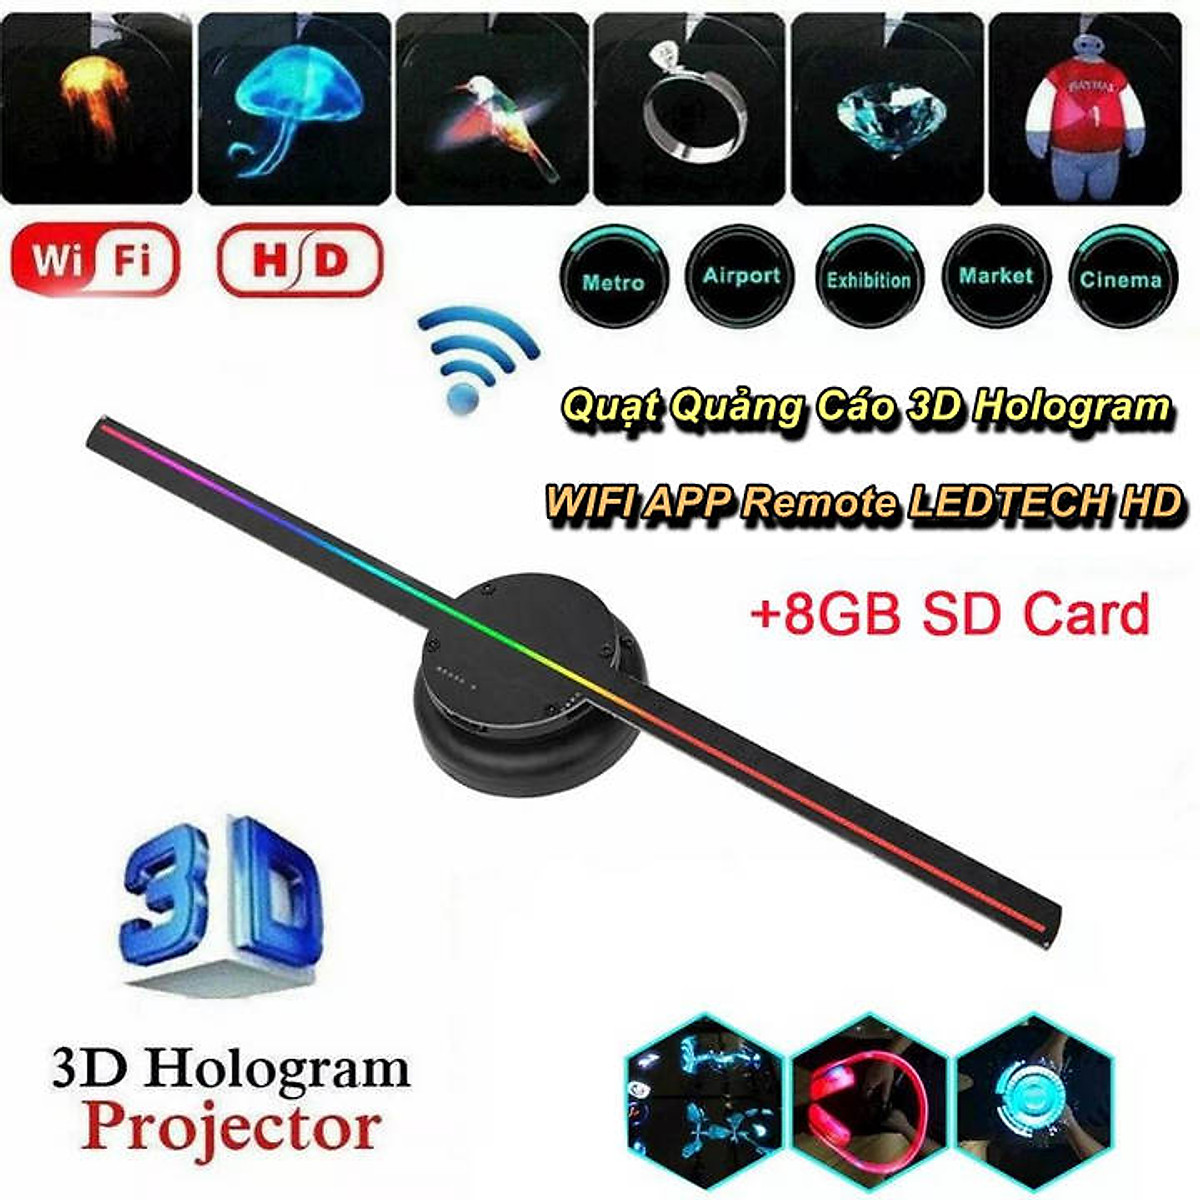 Quạt quảng cáo 3D hologram WIFI APP Remote LEDTECH HD chắc chắn sẽ làm bạn bị mê hoặc bởi sự tinh tế và độc đáo của nó. Hãy tưởng tượng một không gian kinh doanh của bạn được trang bị những hình ảnh sống động và đầy sắc màu với sự hỗ trợ của quạt quảng cáo 3D hologram này.